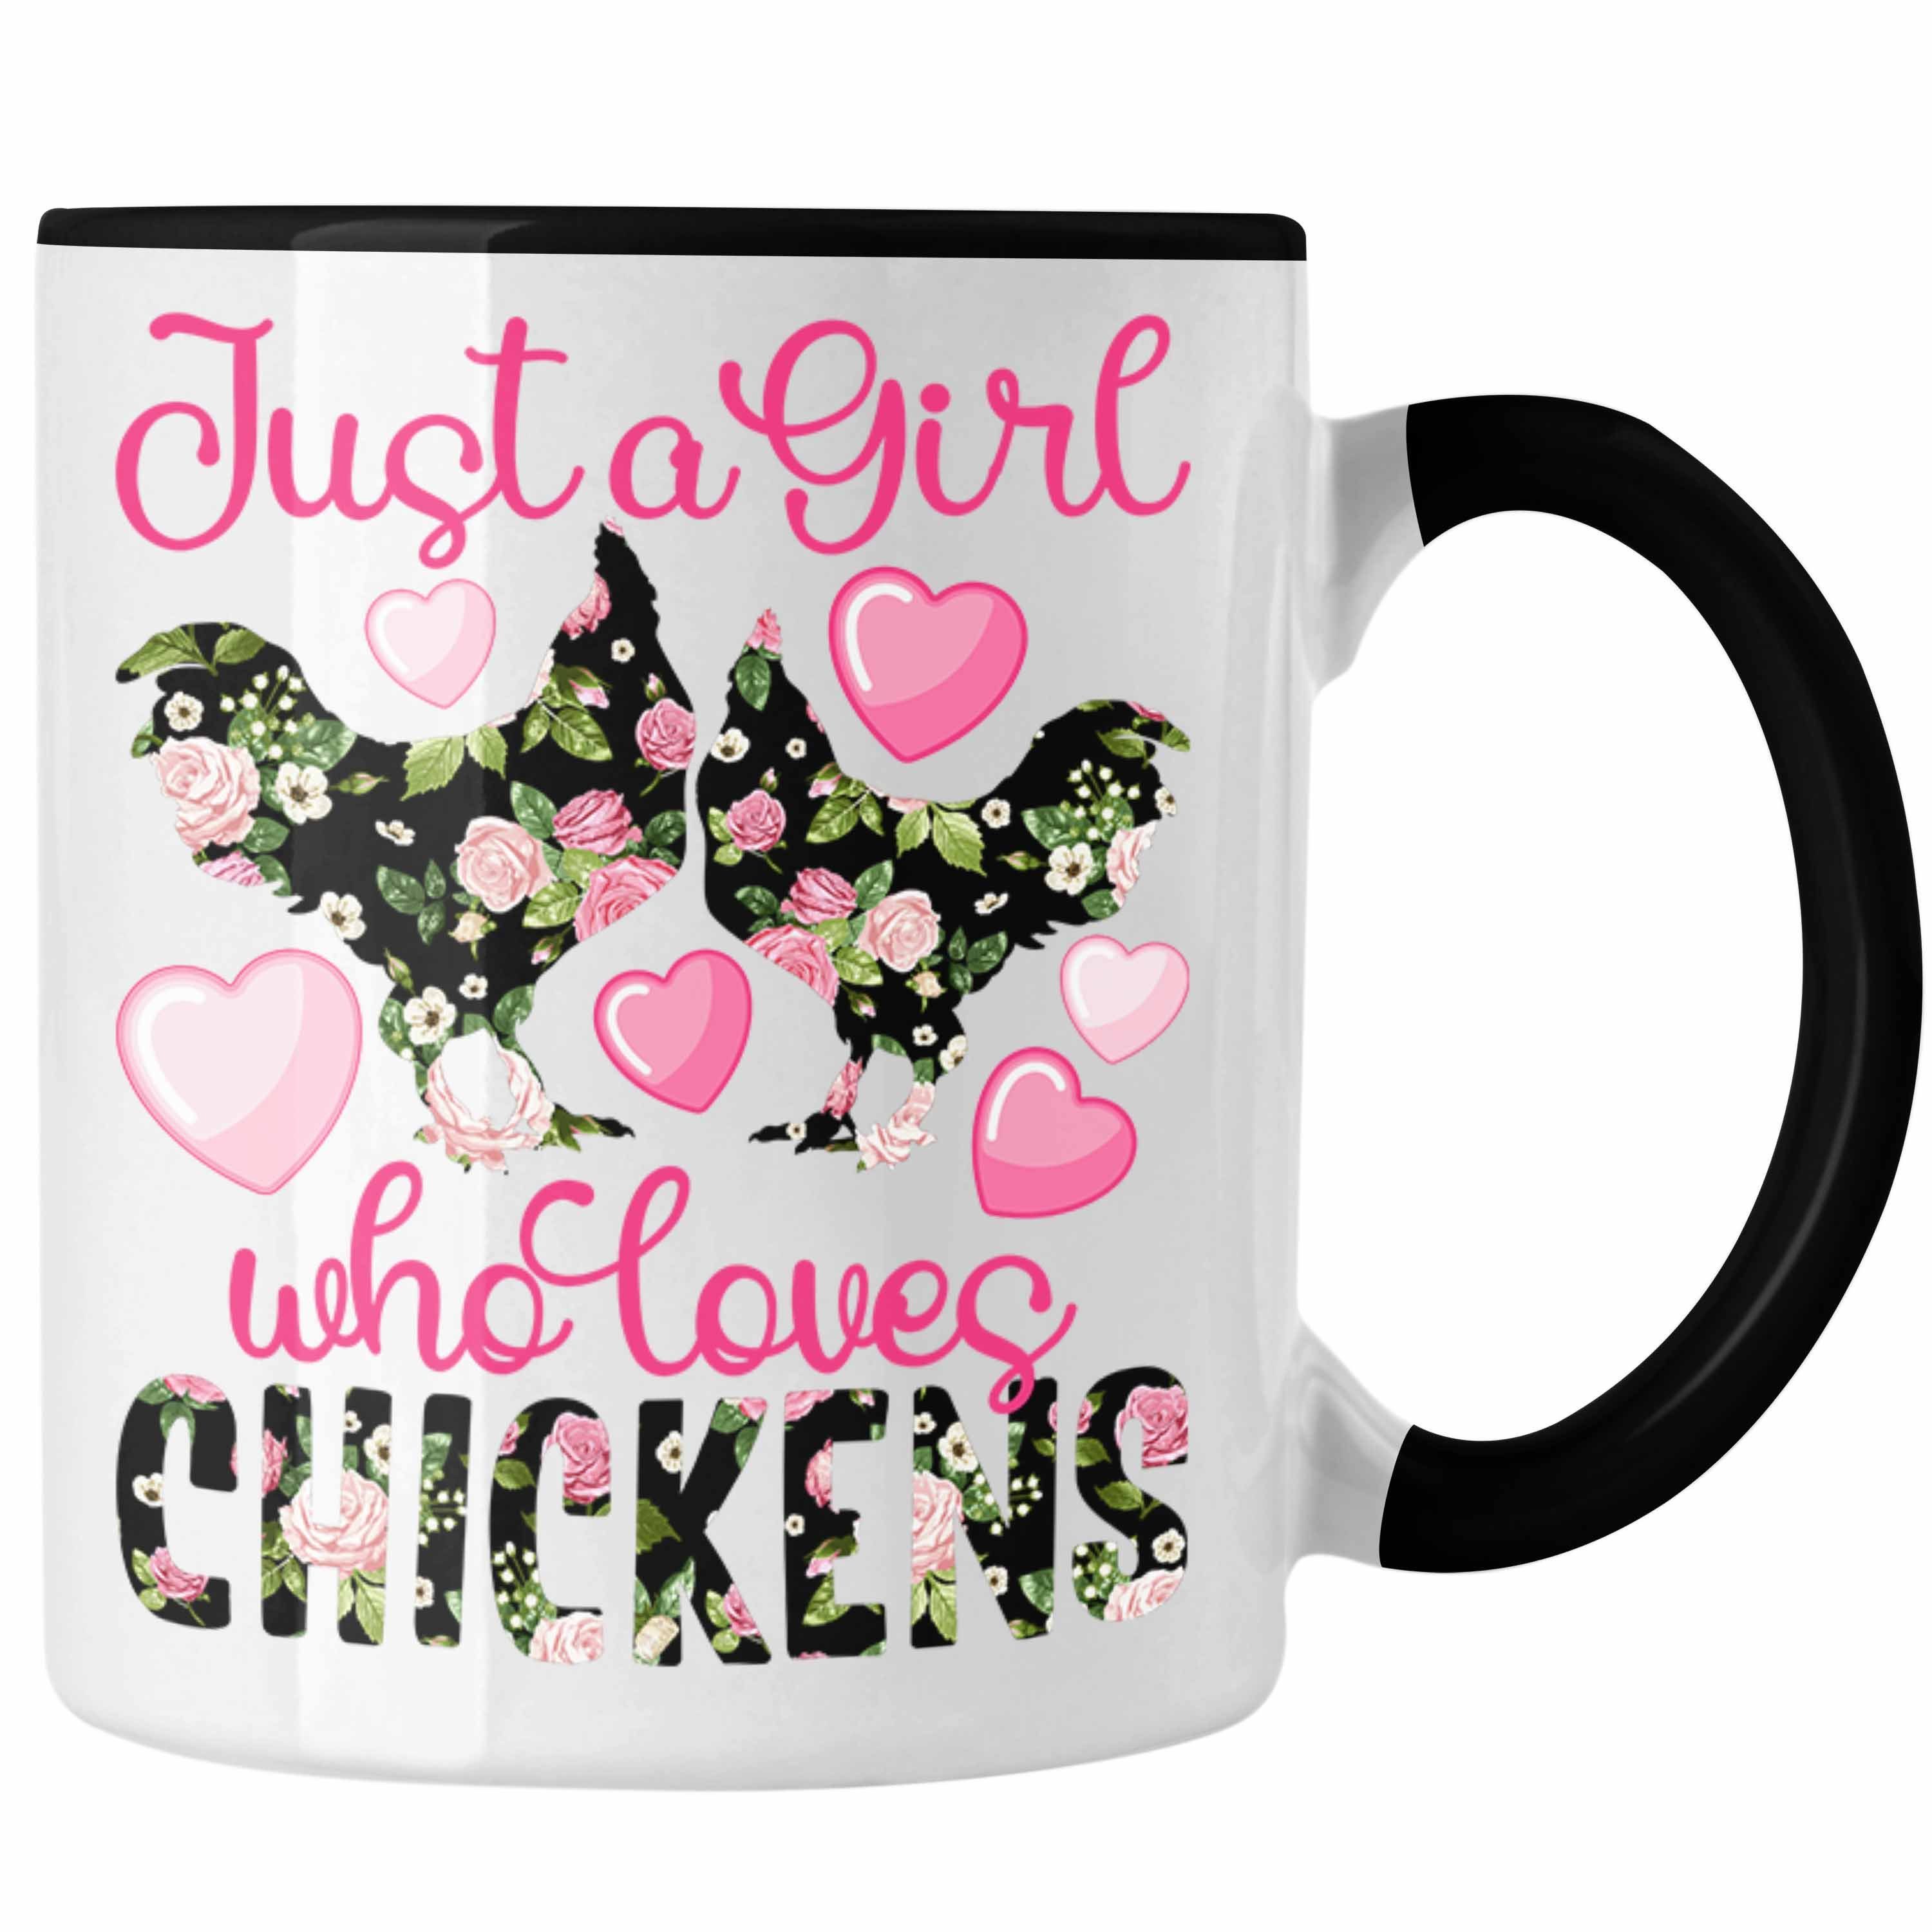 Trendation Tasse "Just A Girl Hühner Schwarz Chickens" Liebhaberinnen Tasse Who Loves Geschenk